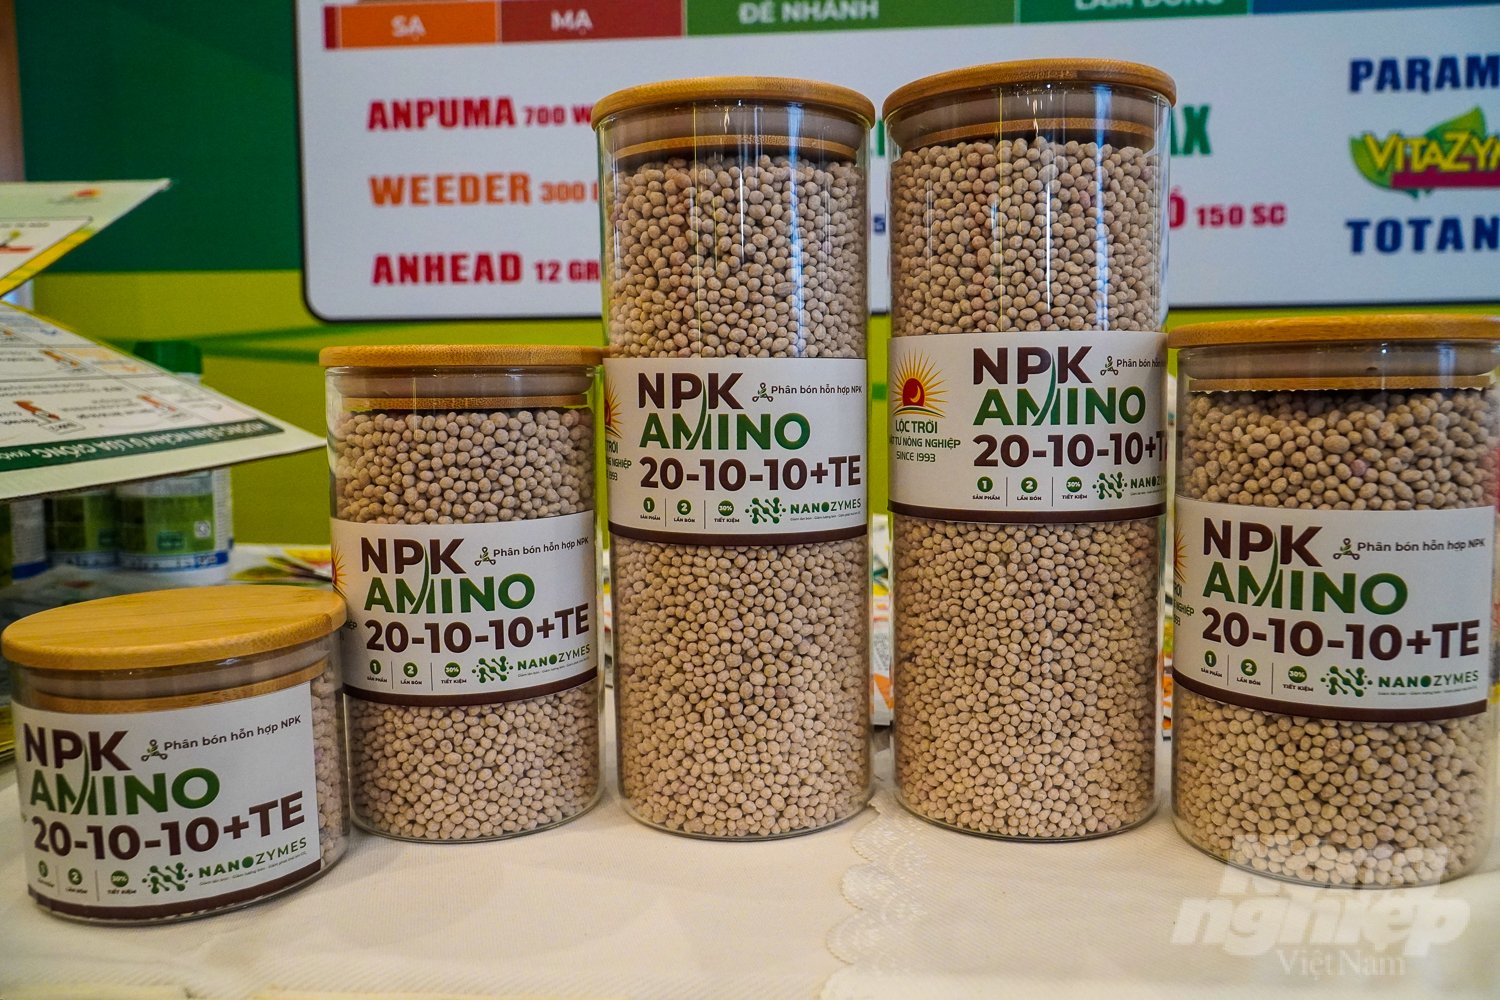 Một trong những dòng sản phẩm mới LTV vừa ra mắt là NPK Amino 20-10-10+TE – phân bón hỗn hợp chuyên biệt cho cây lúa. Ảnh: Kim Anh.